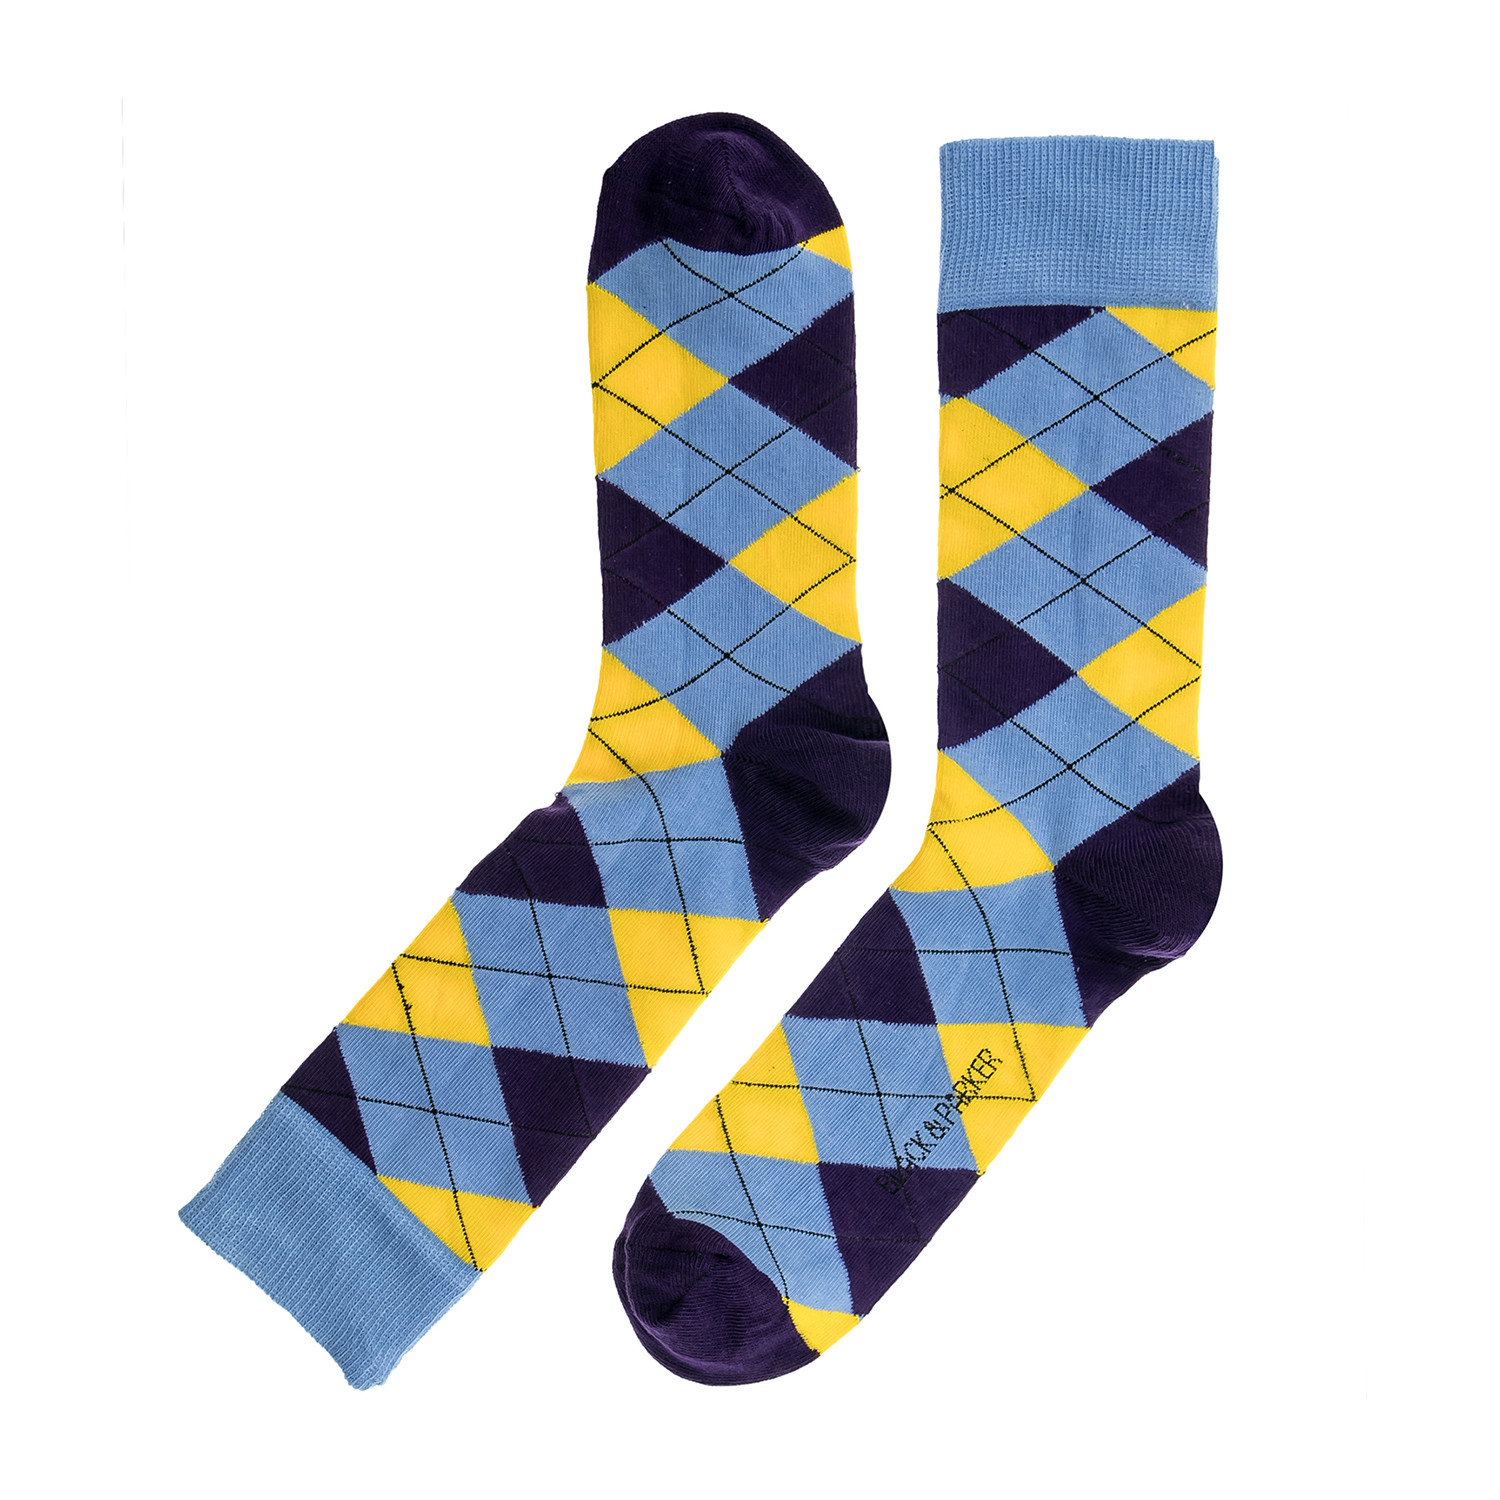 Bolton Regular Socks // Set of 5 - Black & Parker - Touch of Modern